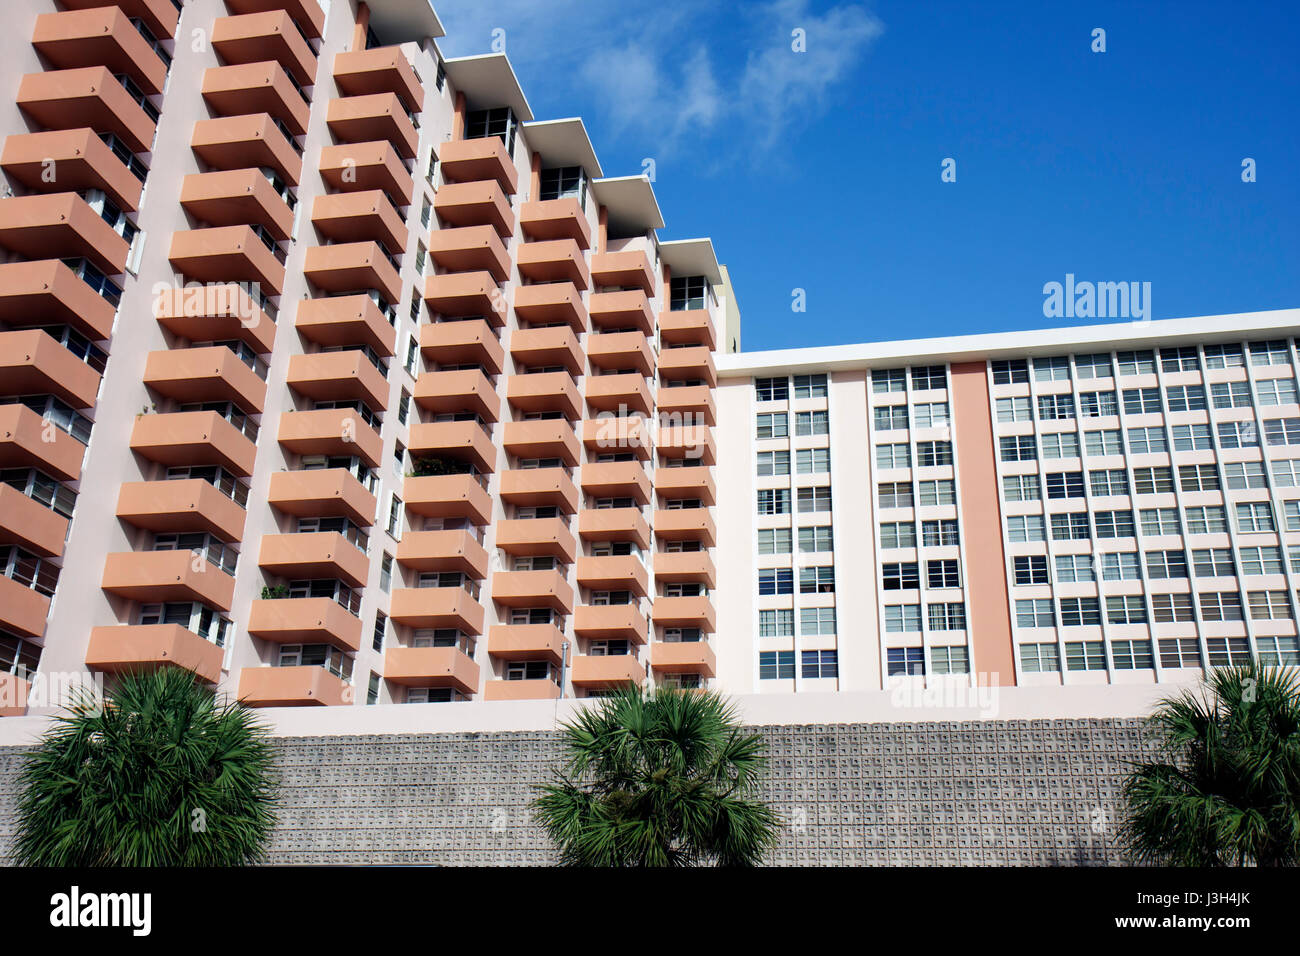 Miami Beach Florida,Collins Avenue,hauteur gratte-ciel gratte-ciel bâtiment bâtiments multi habitation familiale, balcons, condominium résidentiel appartement Banque D'Images